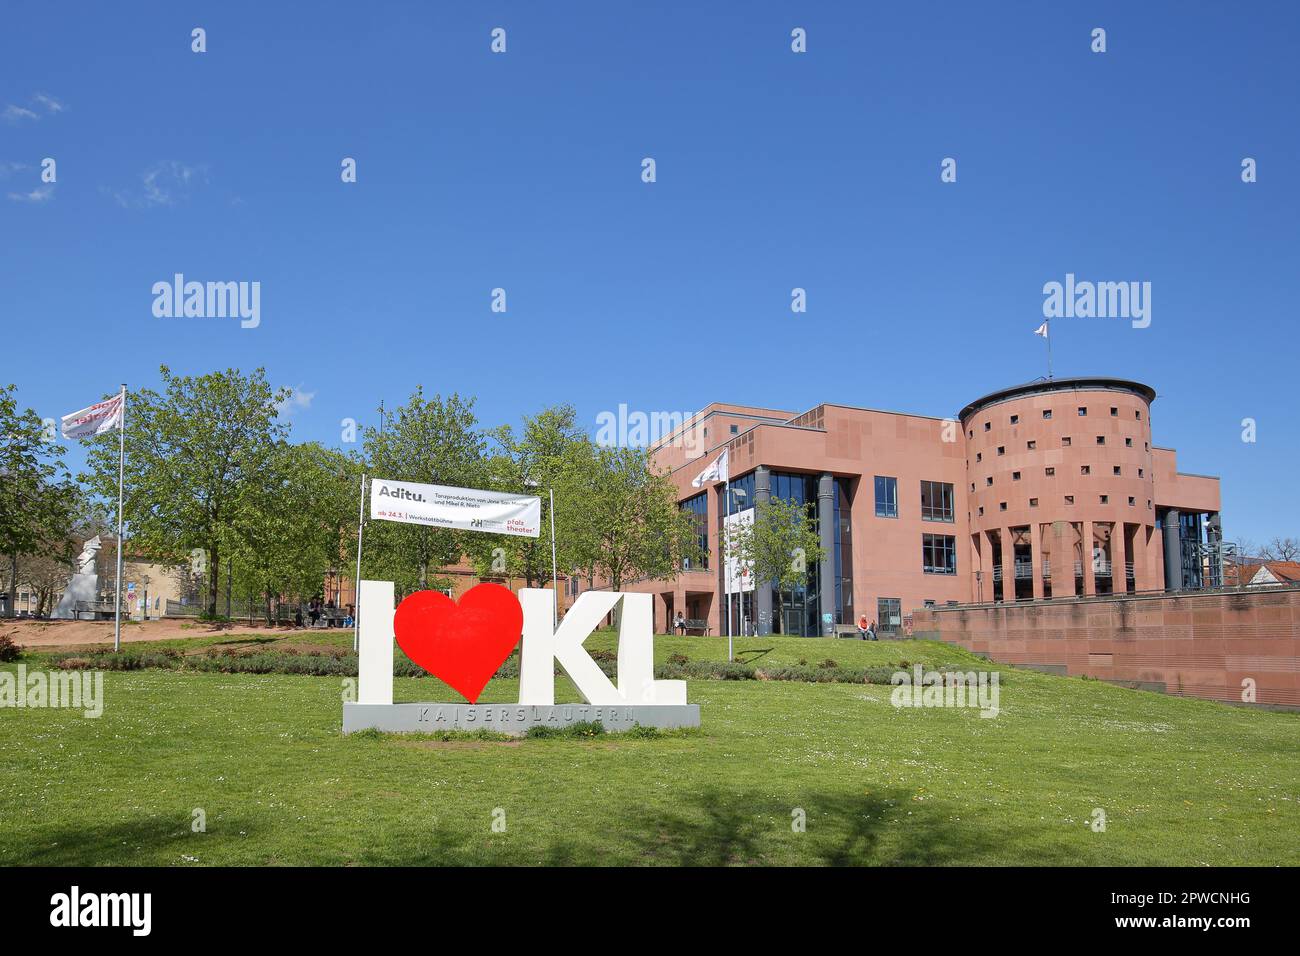 Symbol with heart and love, heart-shaped, heart, I love this city, inscription, Pfalztheater, Kaiserslautern, Rhineland-Palatinate, Germany Stock Photo